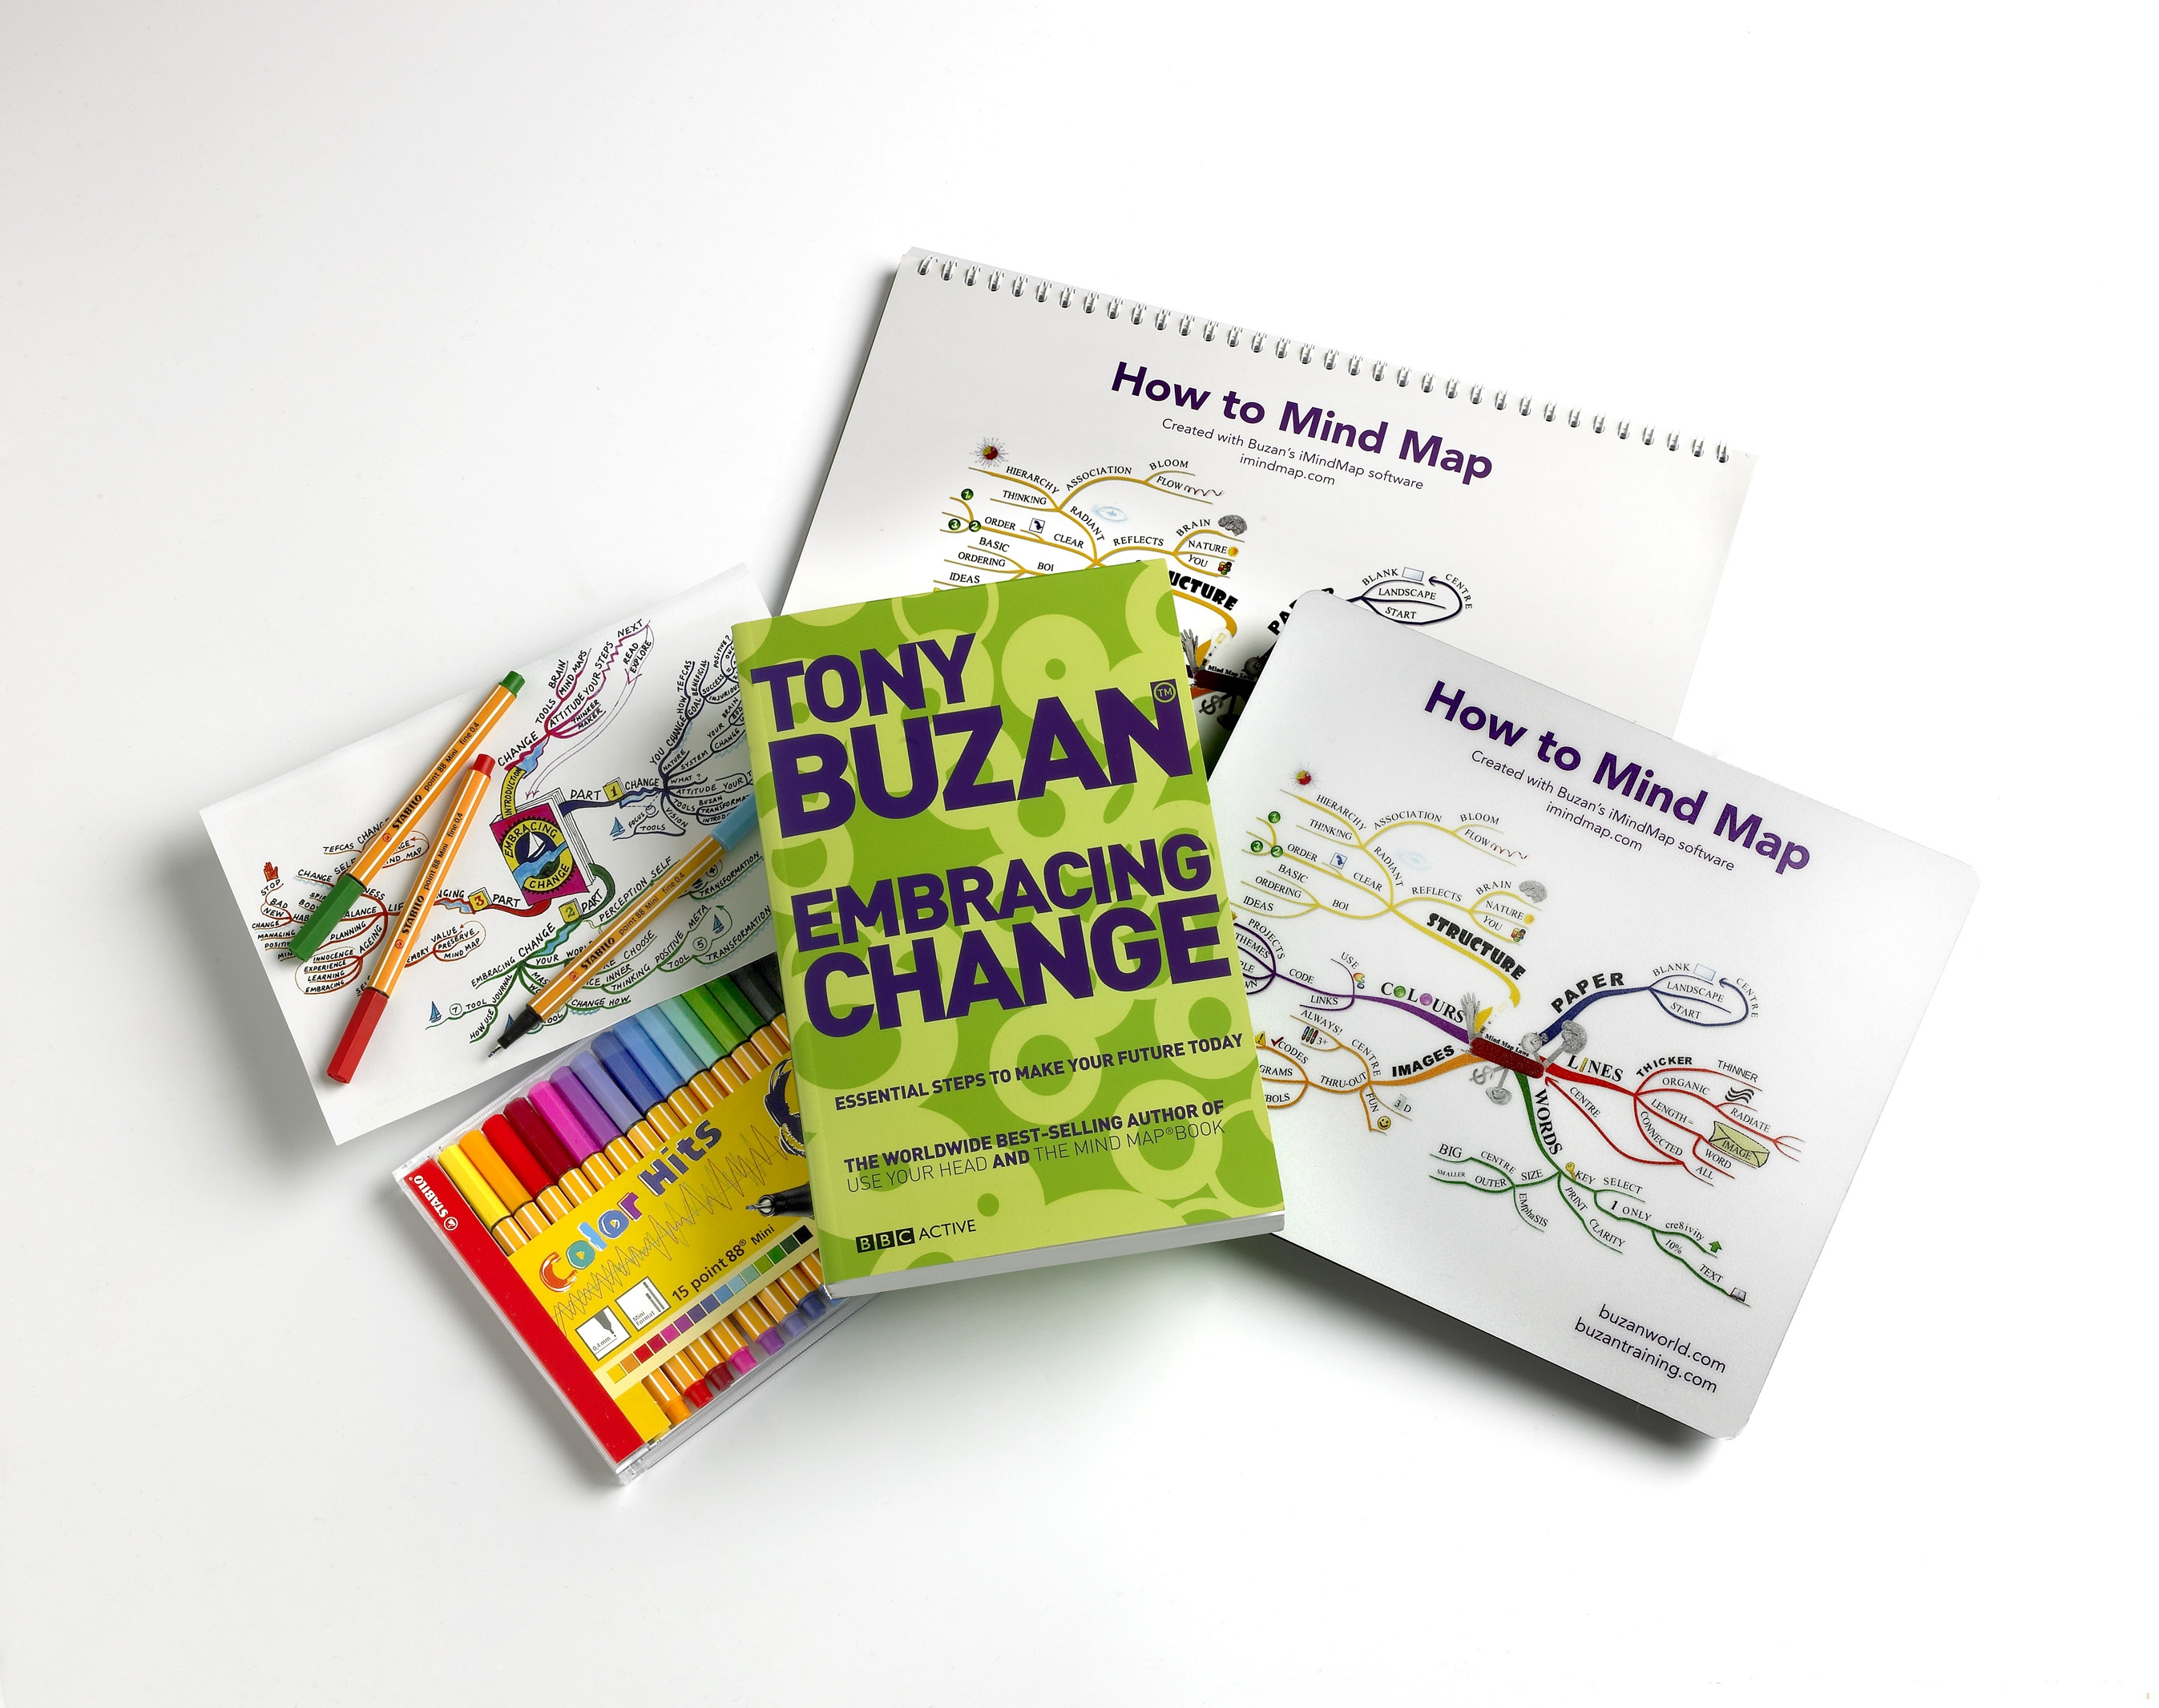 Tony Buzan Embracing Change